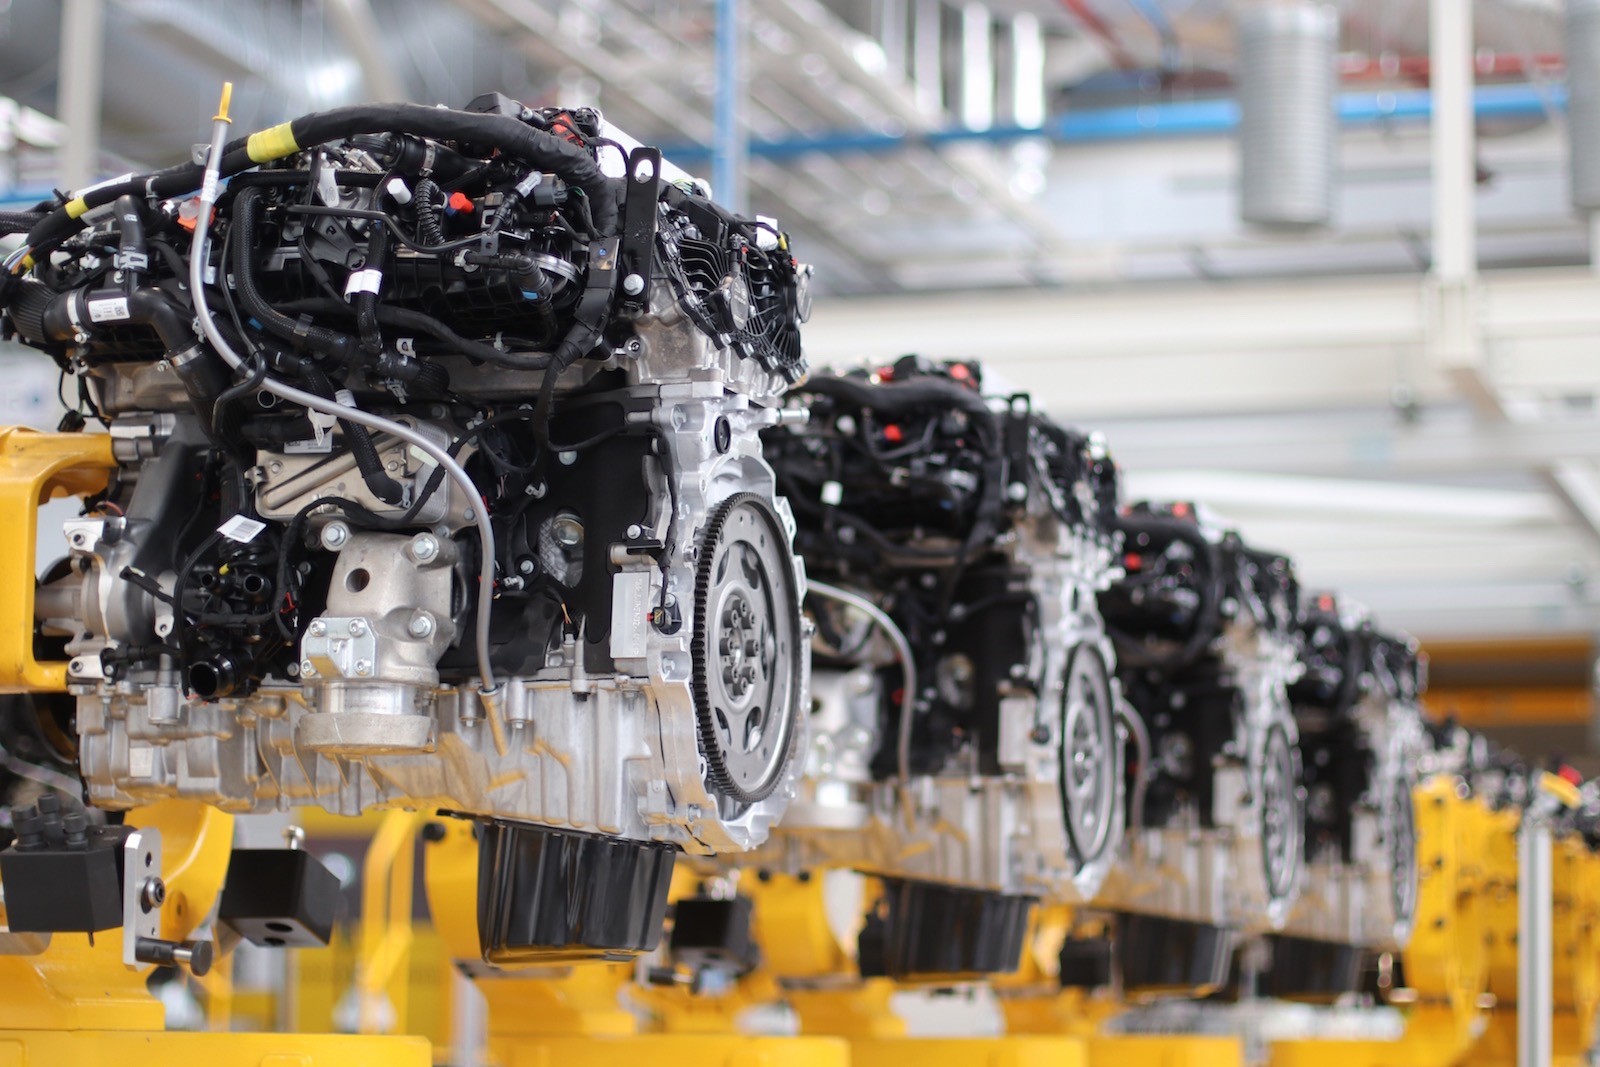 Jaguar Land Rover Ingenium engine production hits 1.5 million units